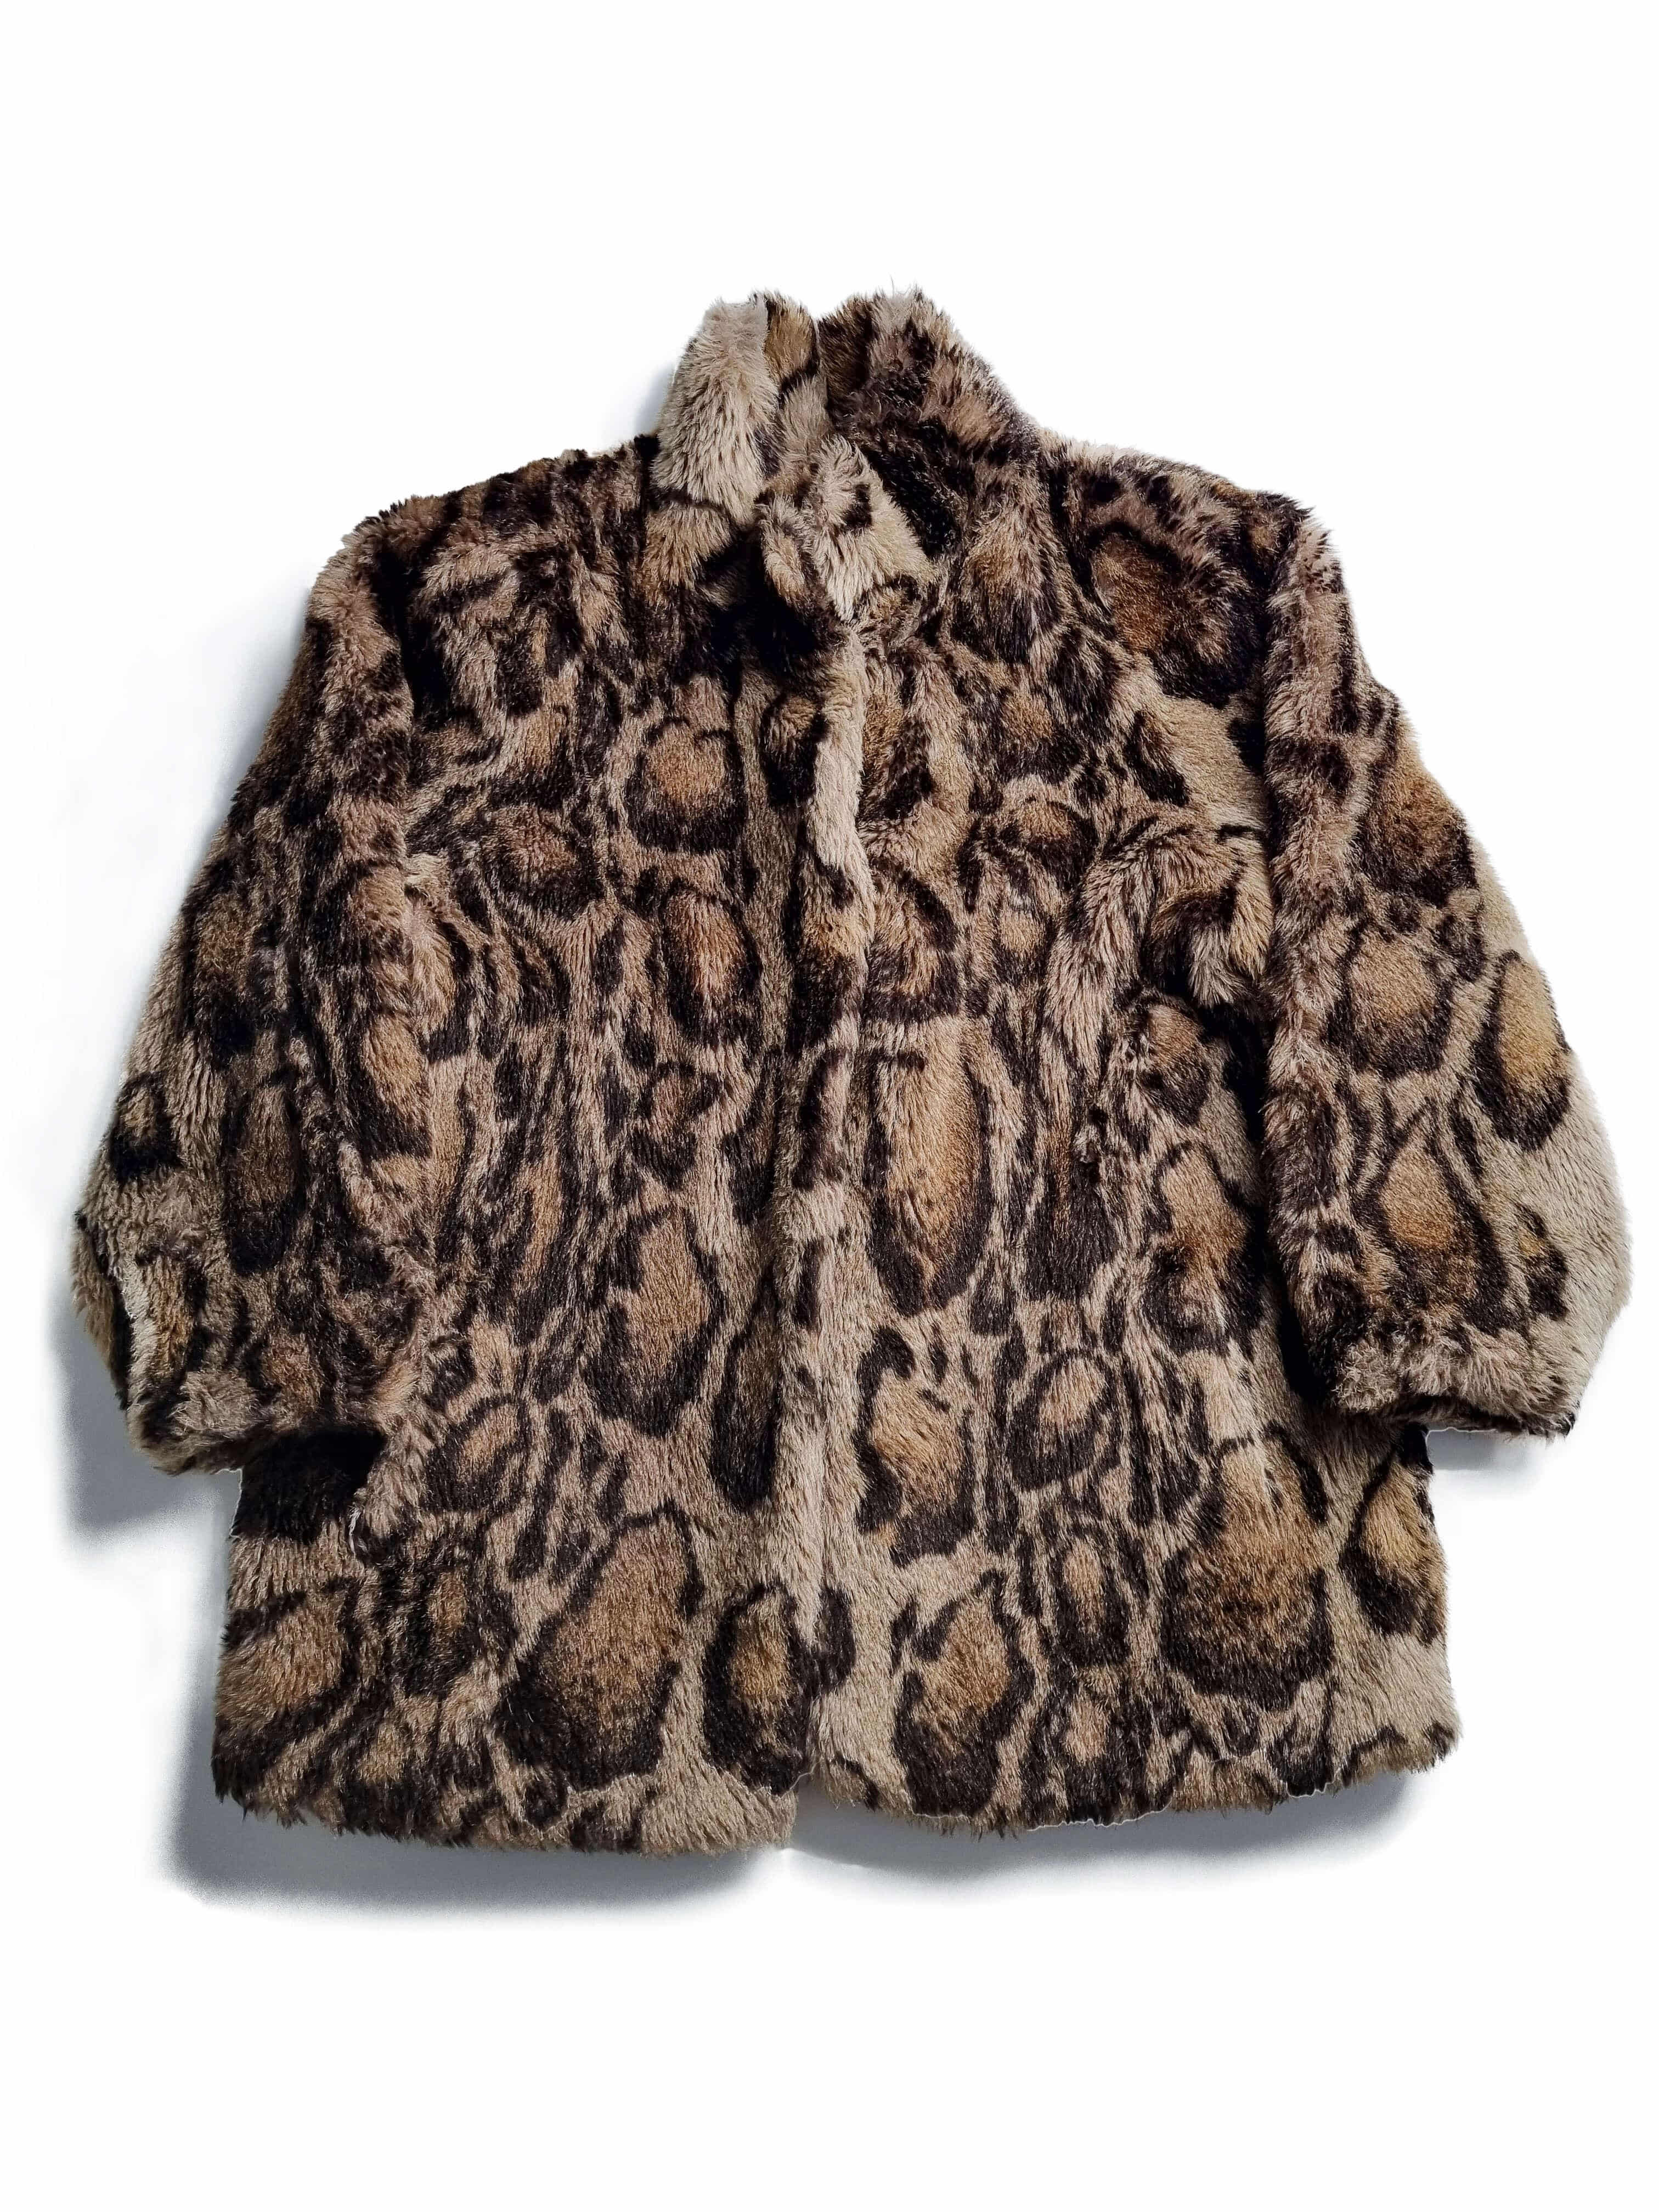 NINA RICCI 80s leopard fur jacket